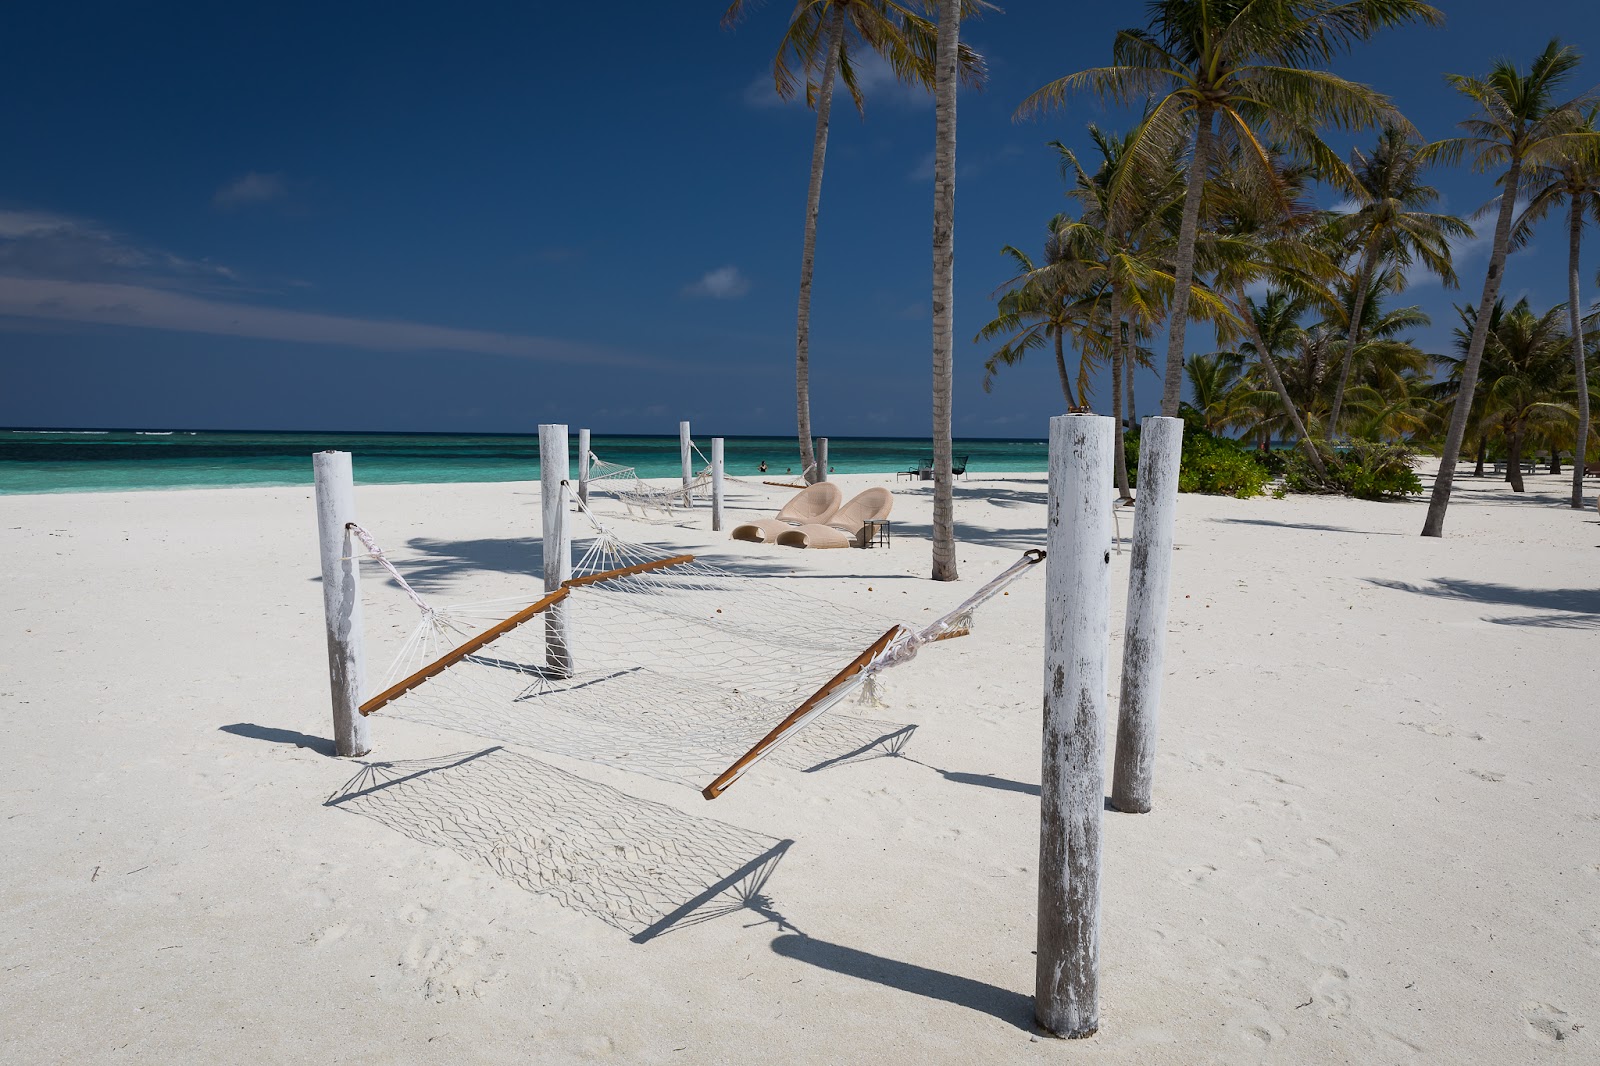 Foto af Kanuhuraa Island Strand - populært sted blandt afslapningskendere